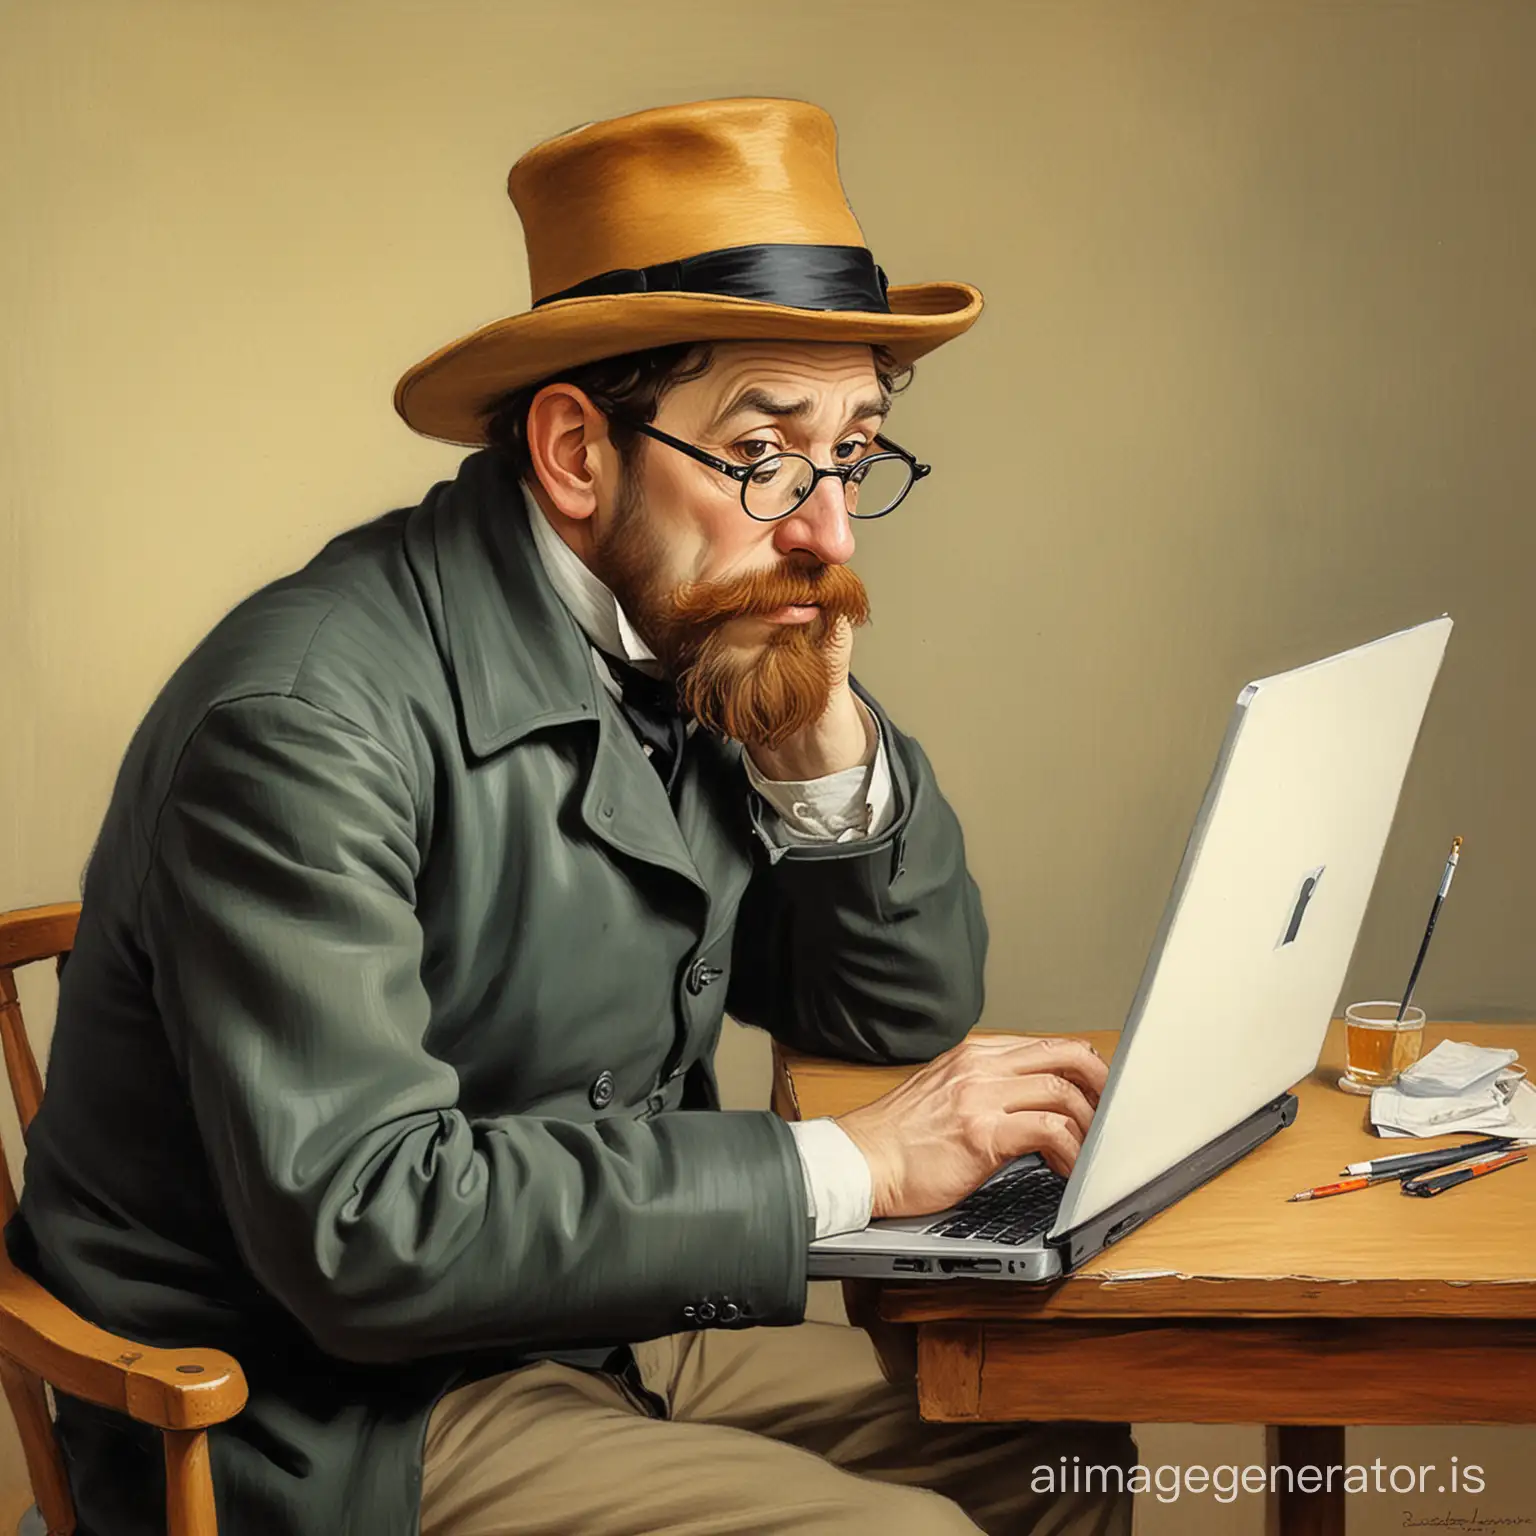 a caricature depicting the painter toulouse lautrec using a laptop